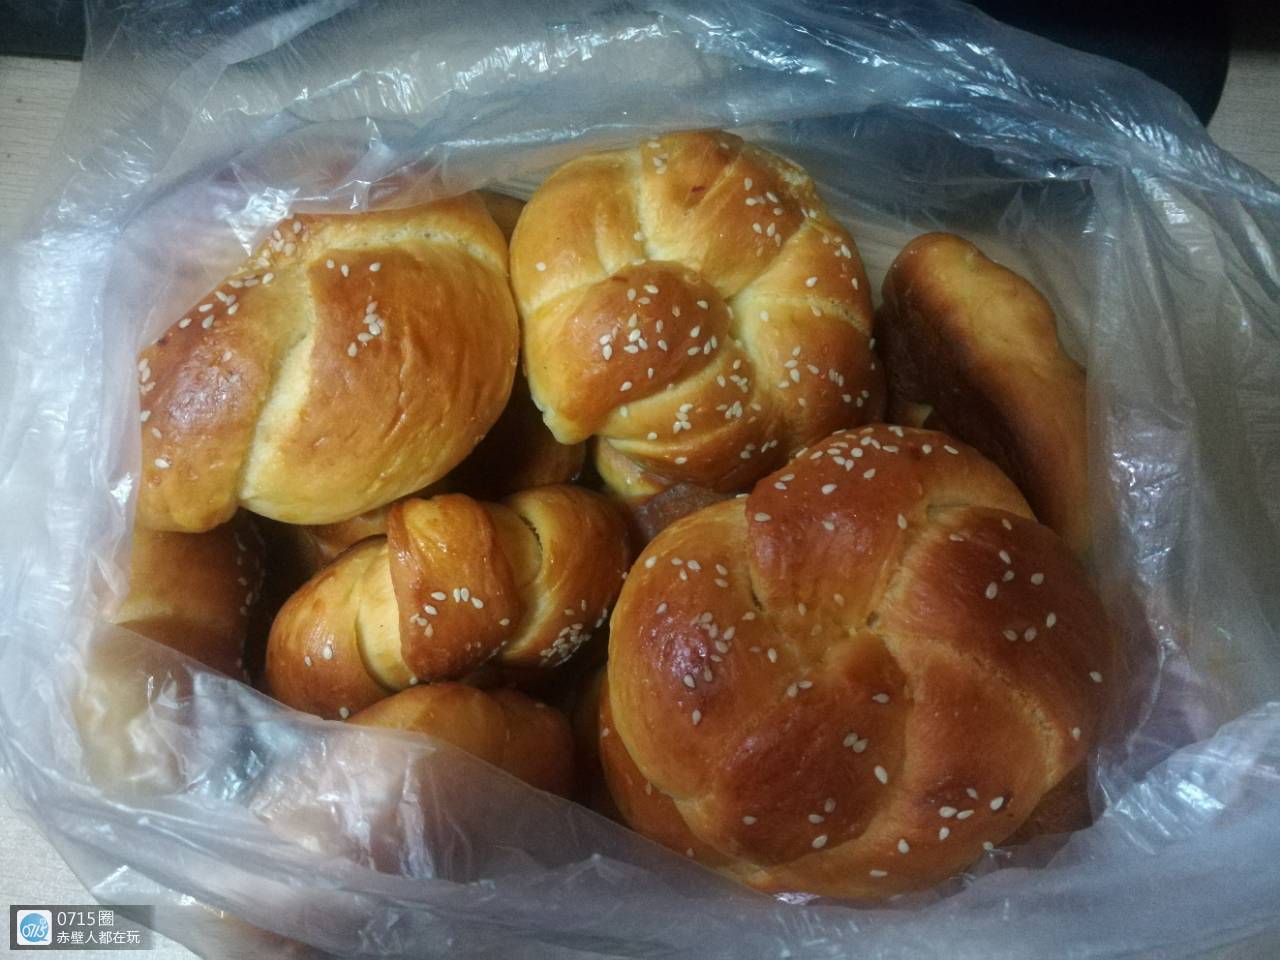 第一次吃到新疆塔城手工面包哦!泡牛奶一起很不错!